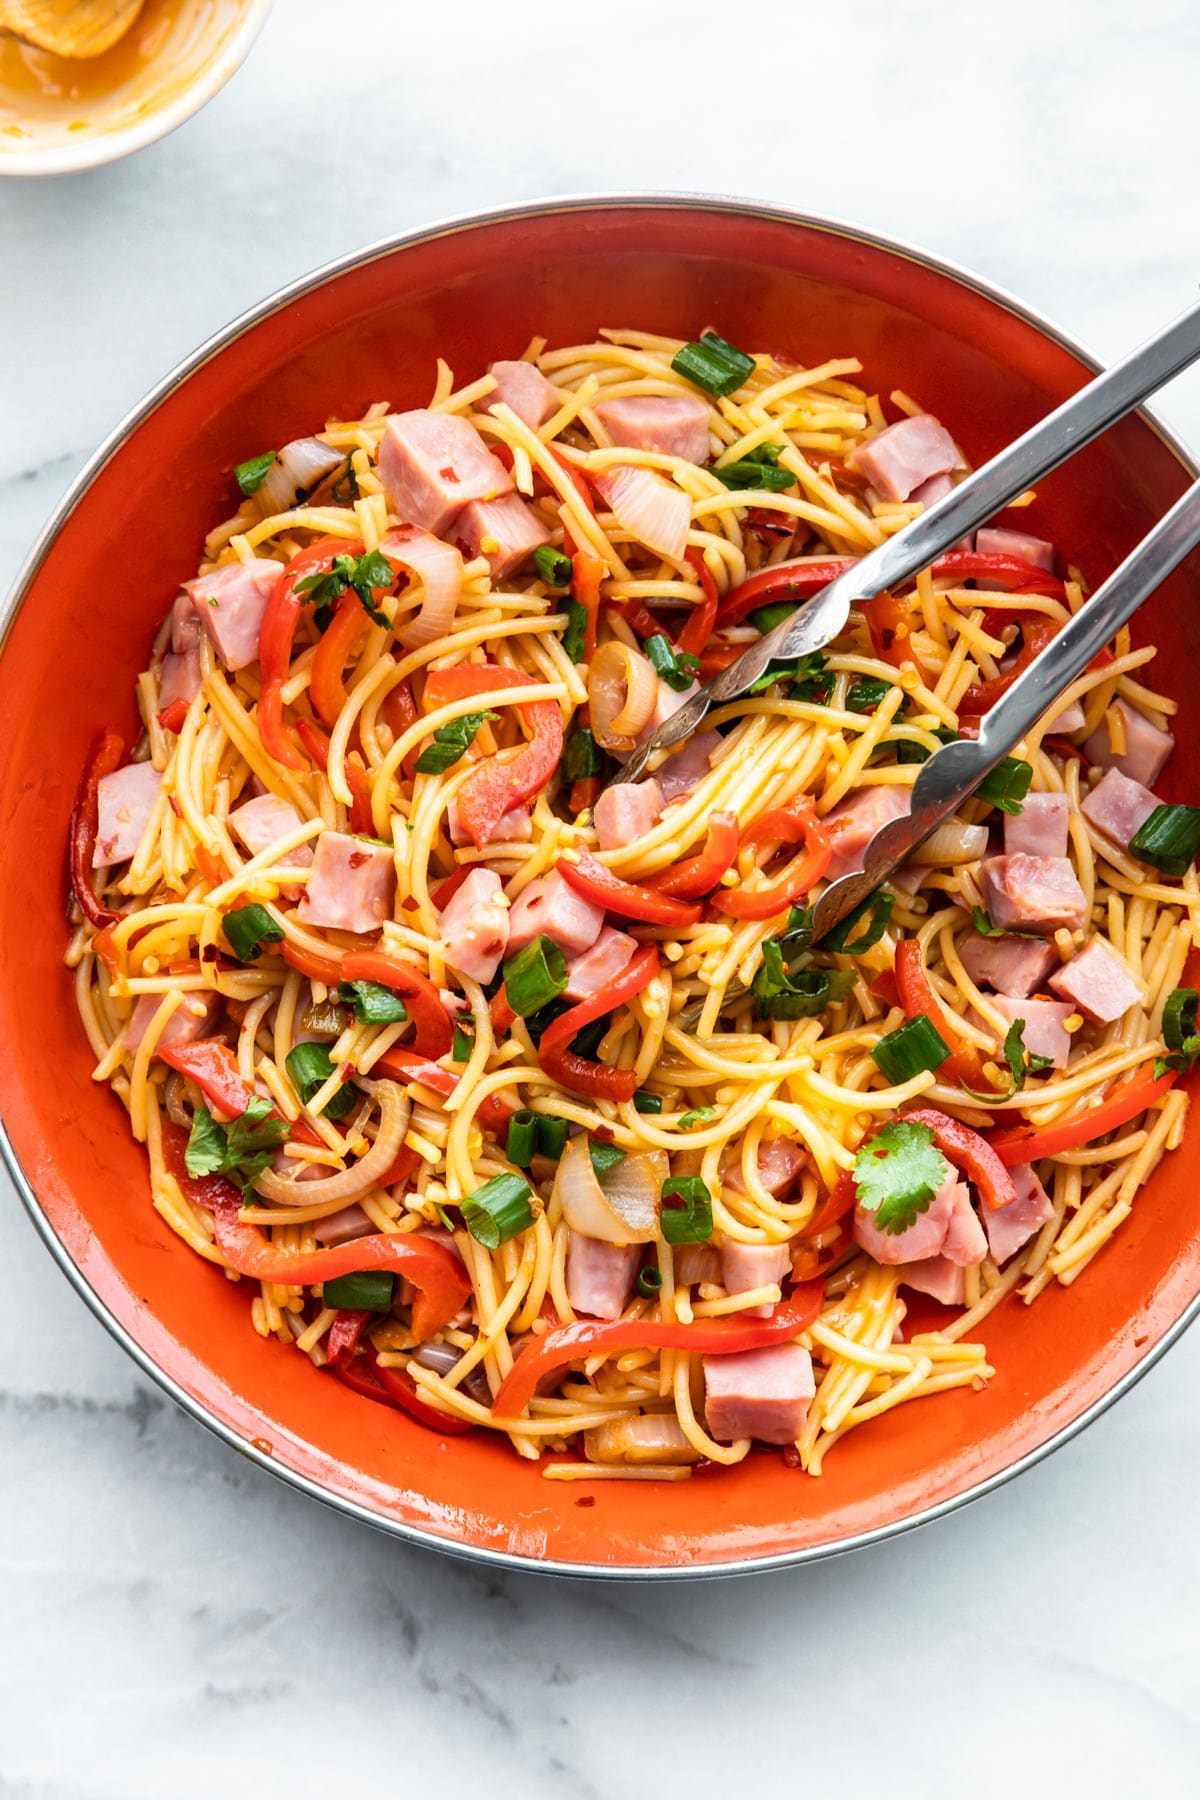 noodles, ham and vegetables in orange bowl